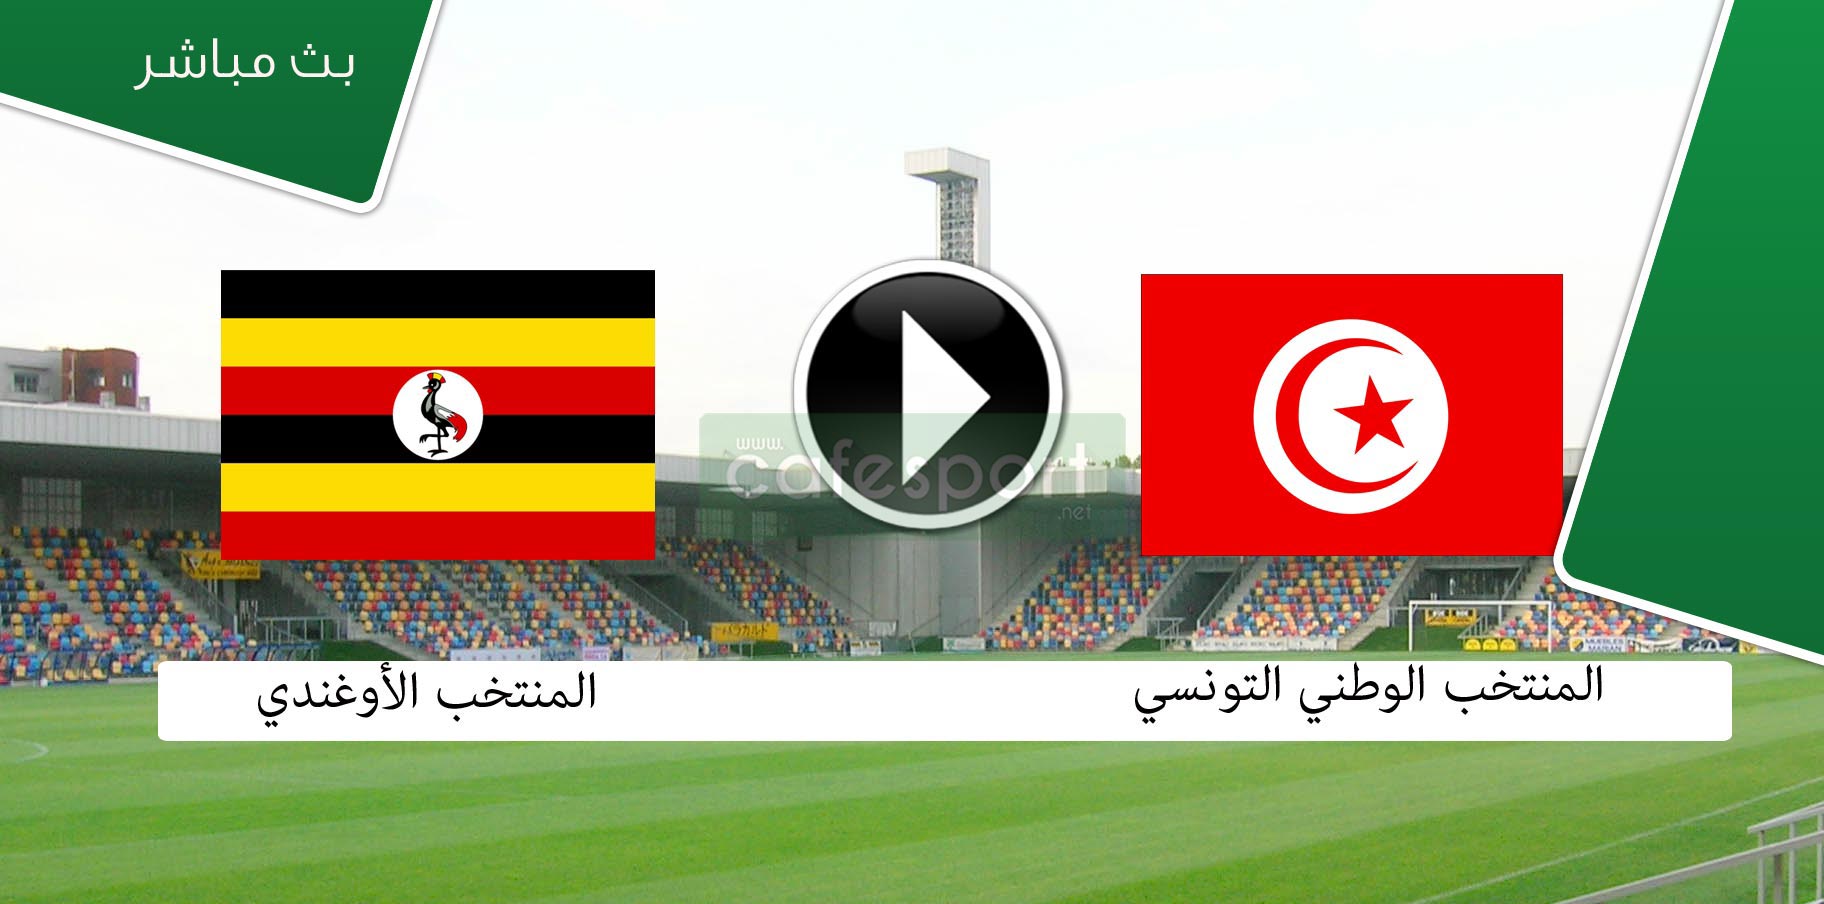 بث مباشر لمباراة تونس - أوغندا